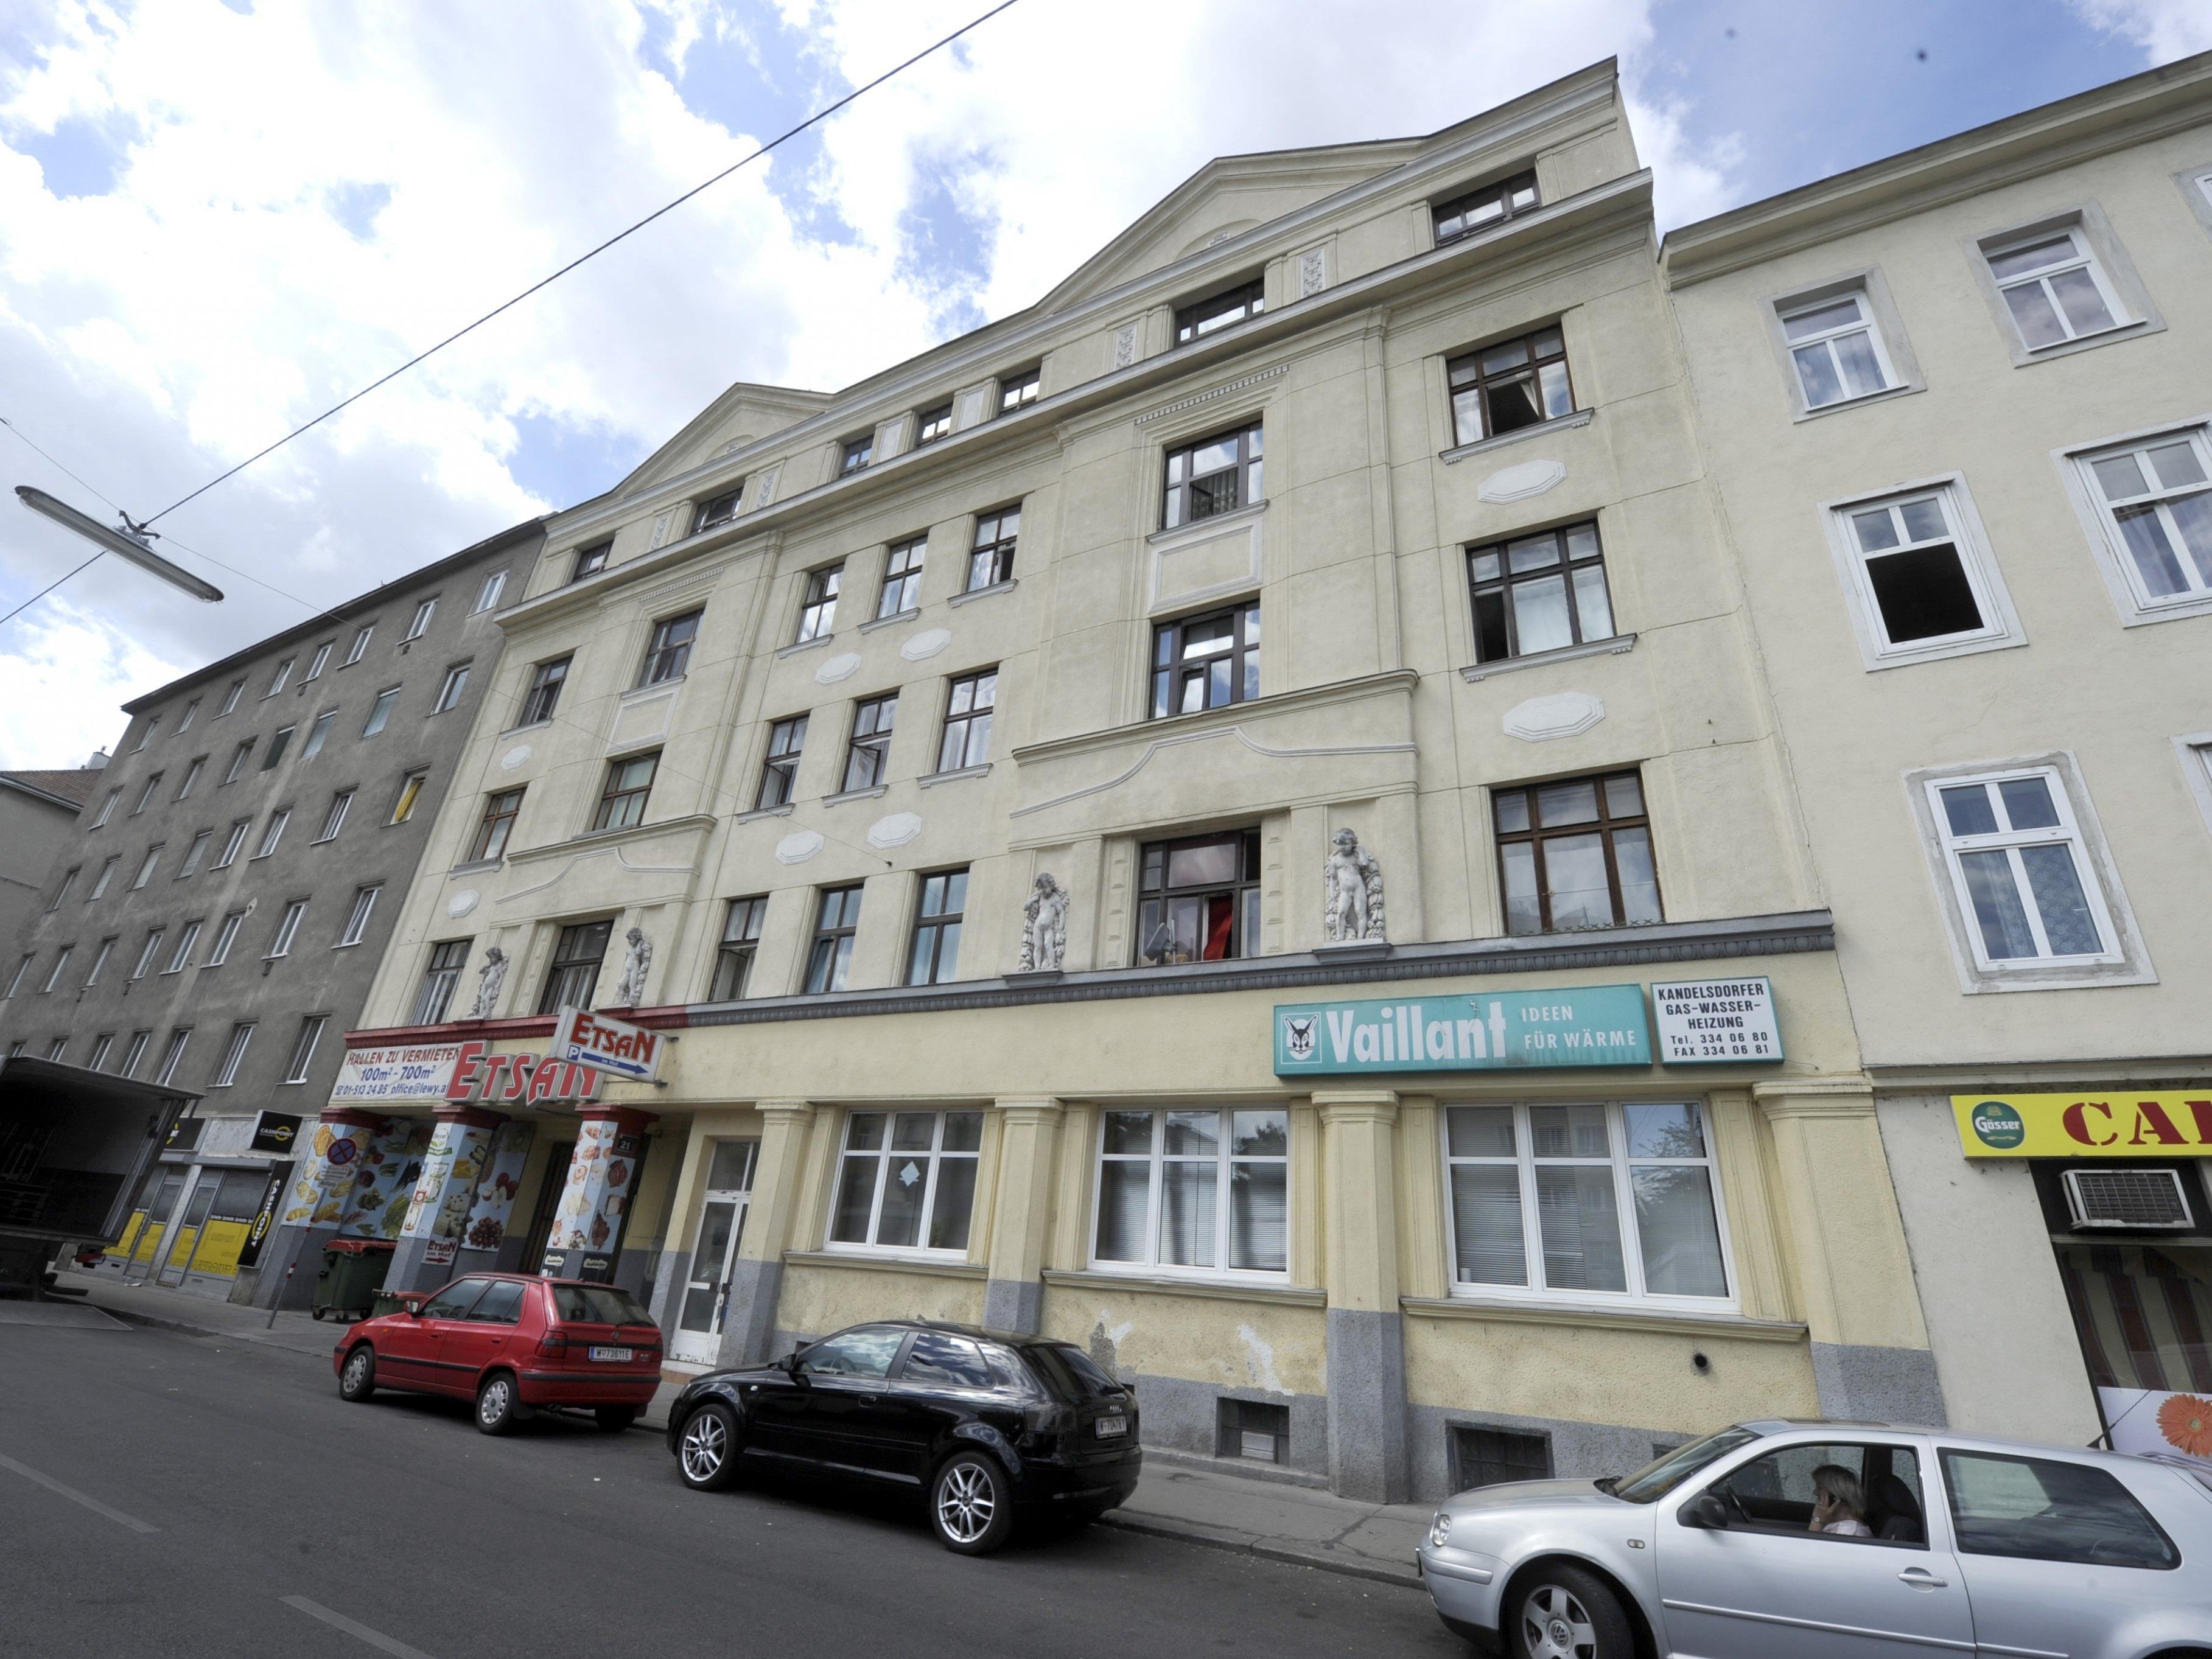 In einer Wohnung in der Hannovergasse in Wien-Brigittenau ereignete sich die Bluttat.